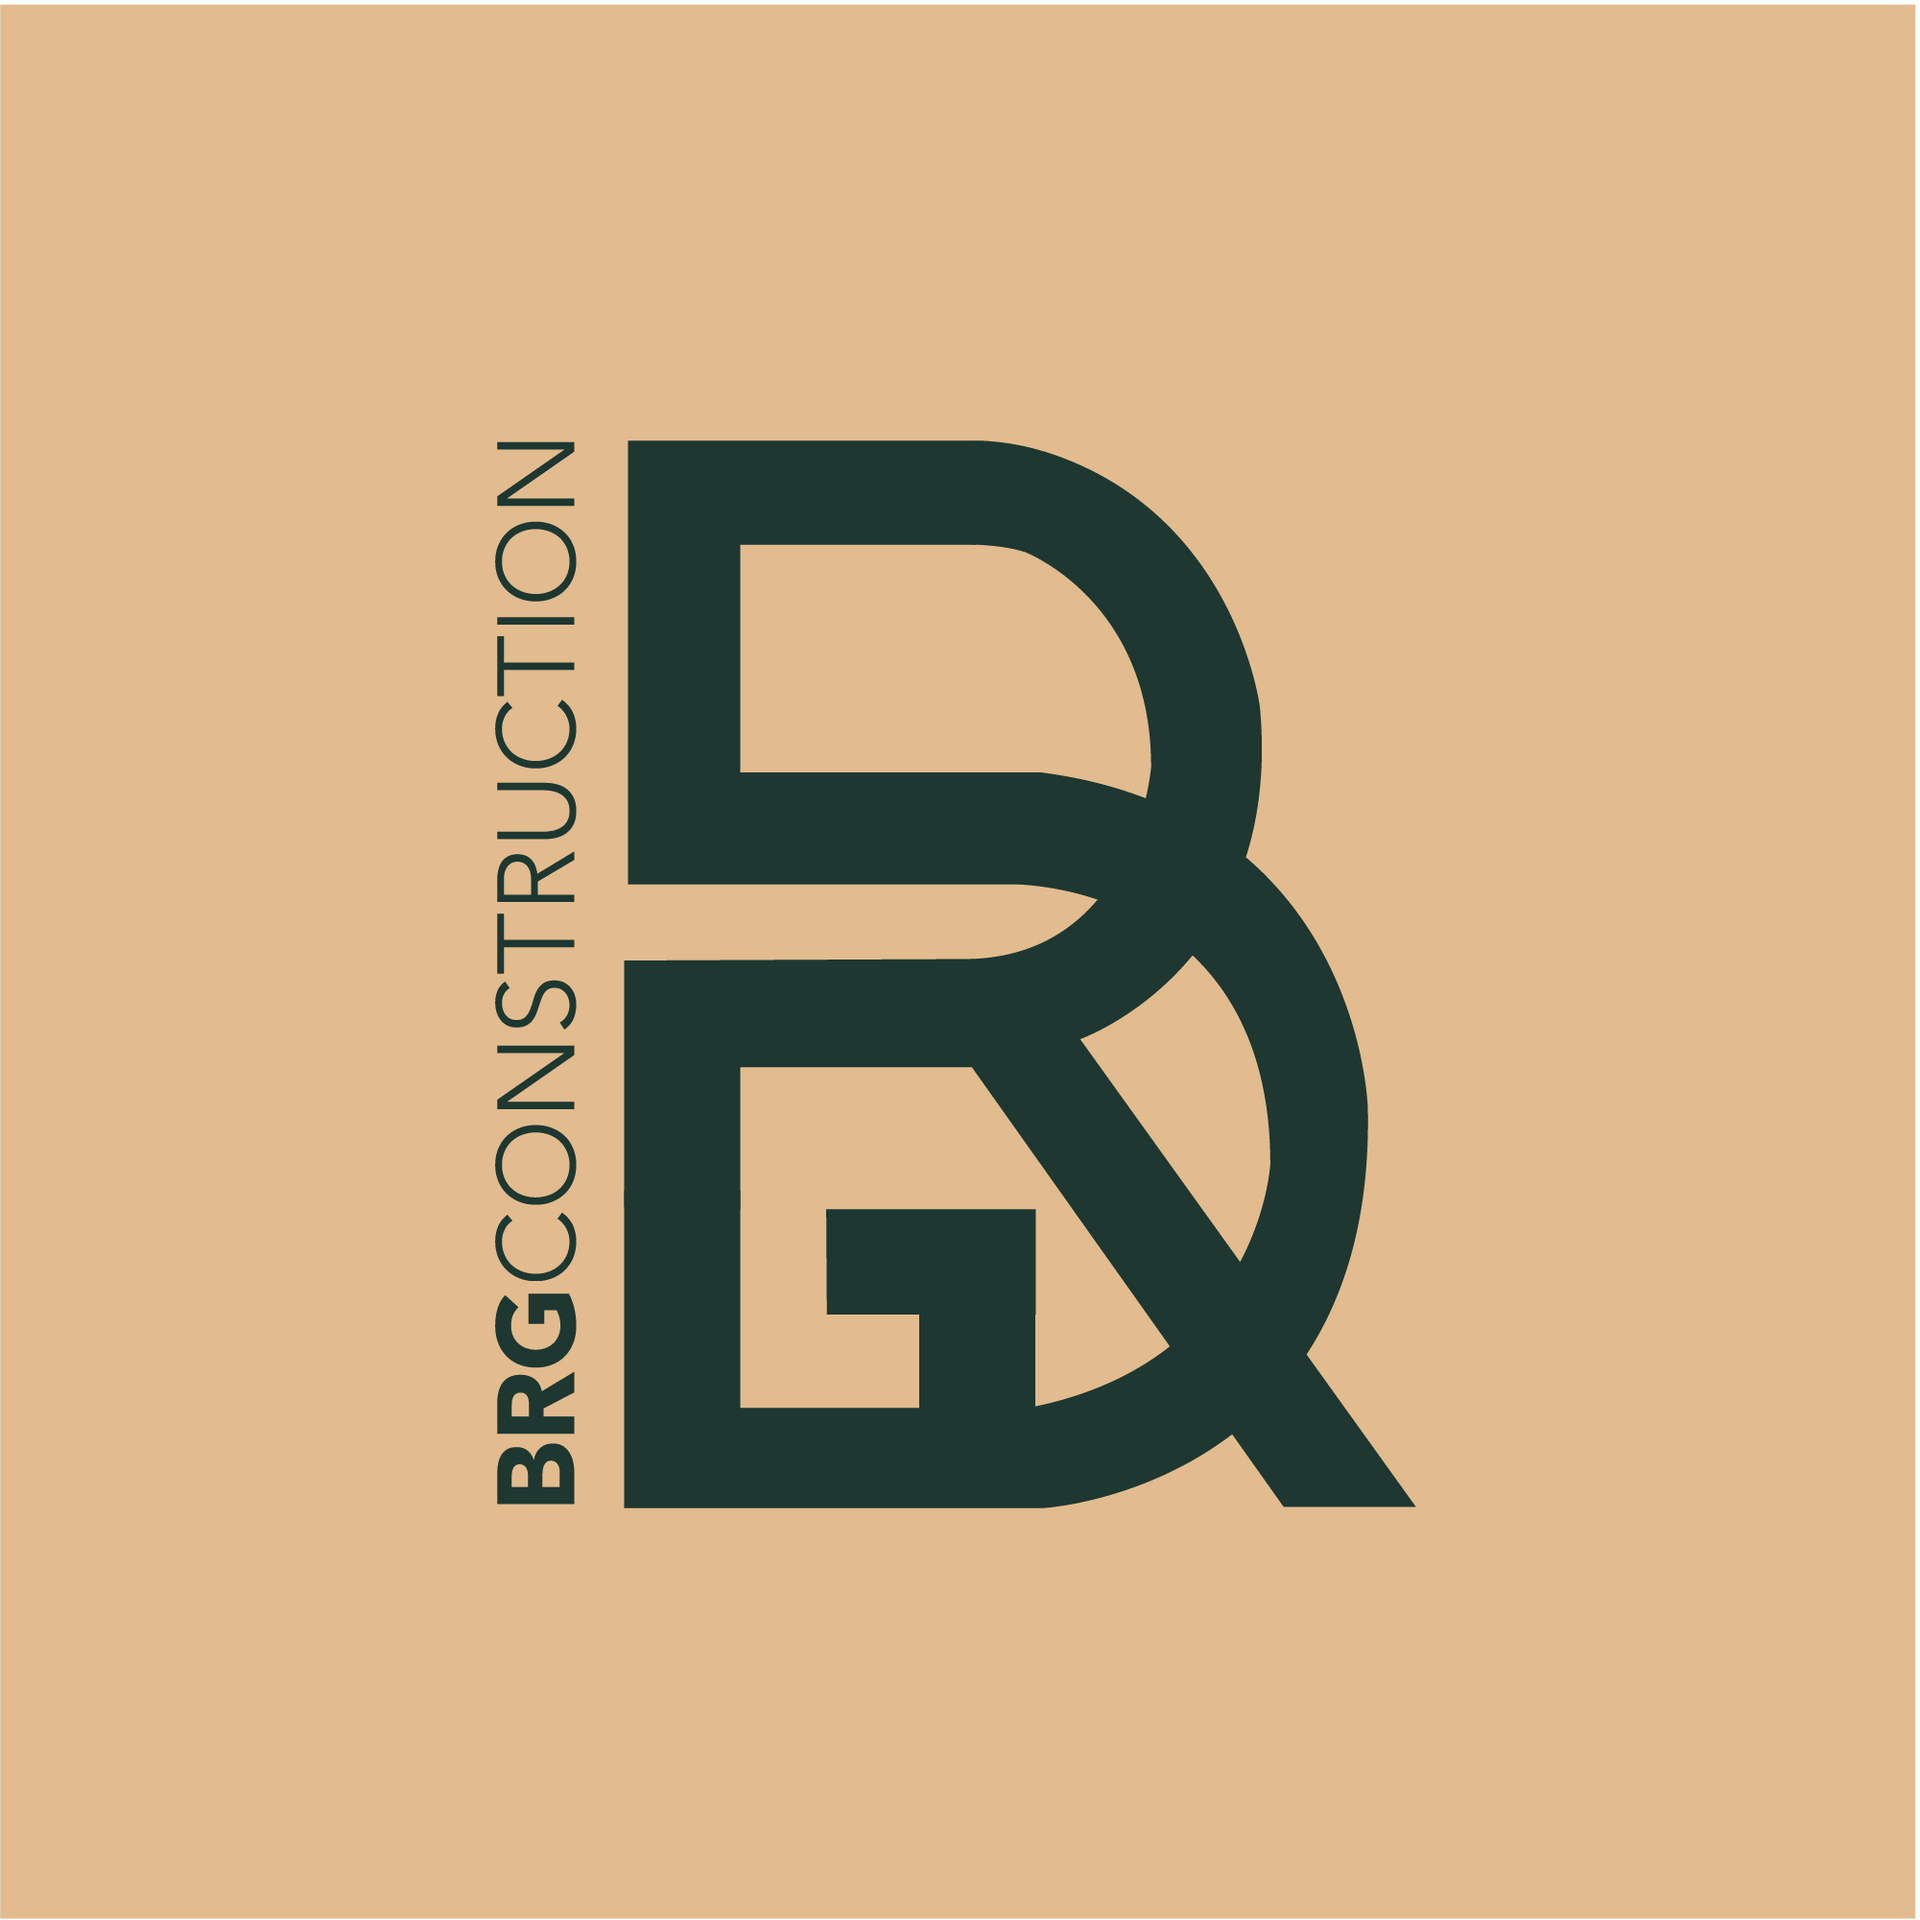 Un logo pour une entreprise appelée brg construction